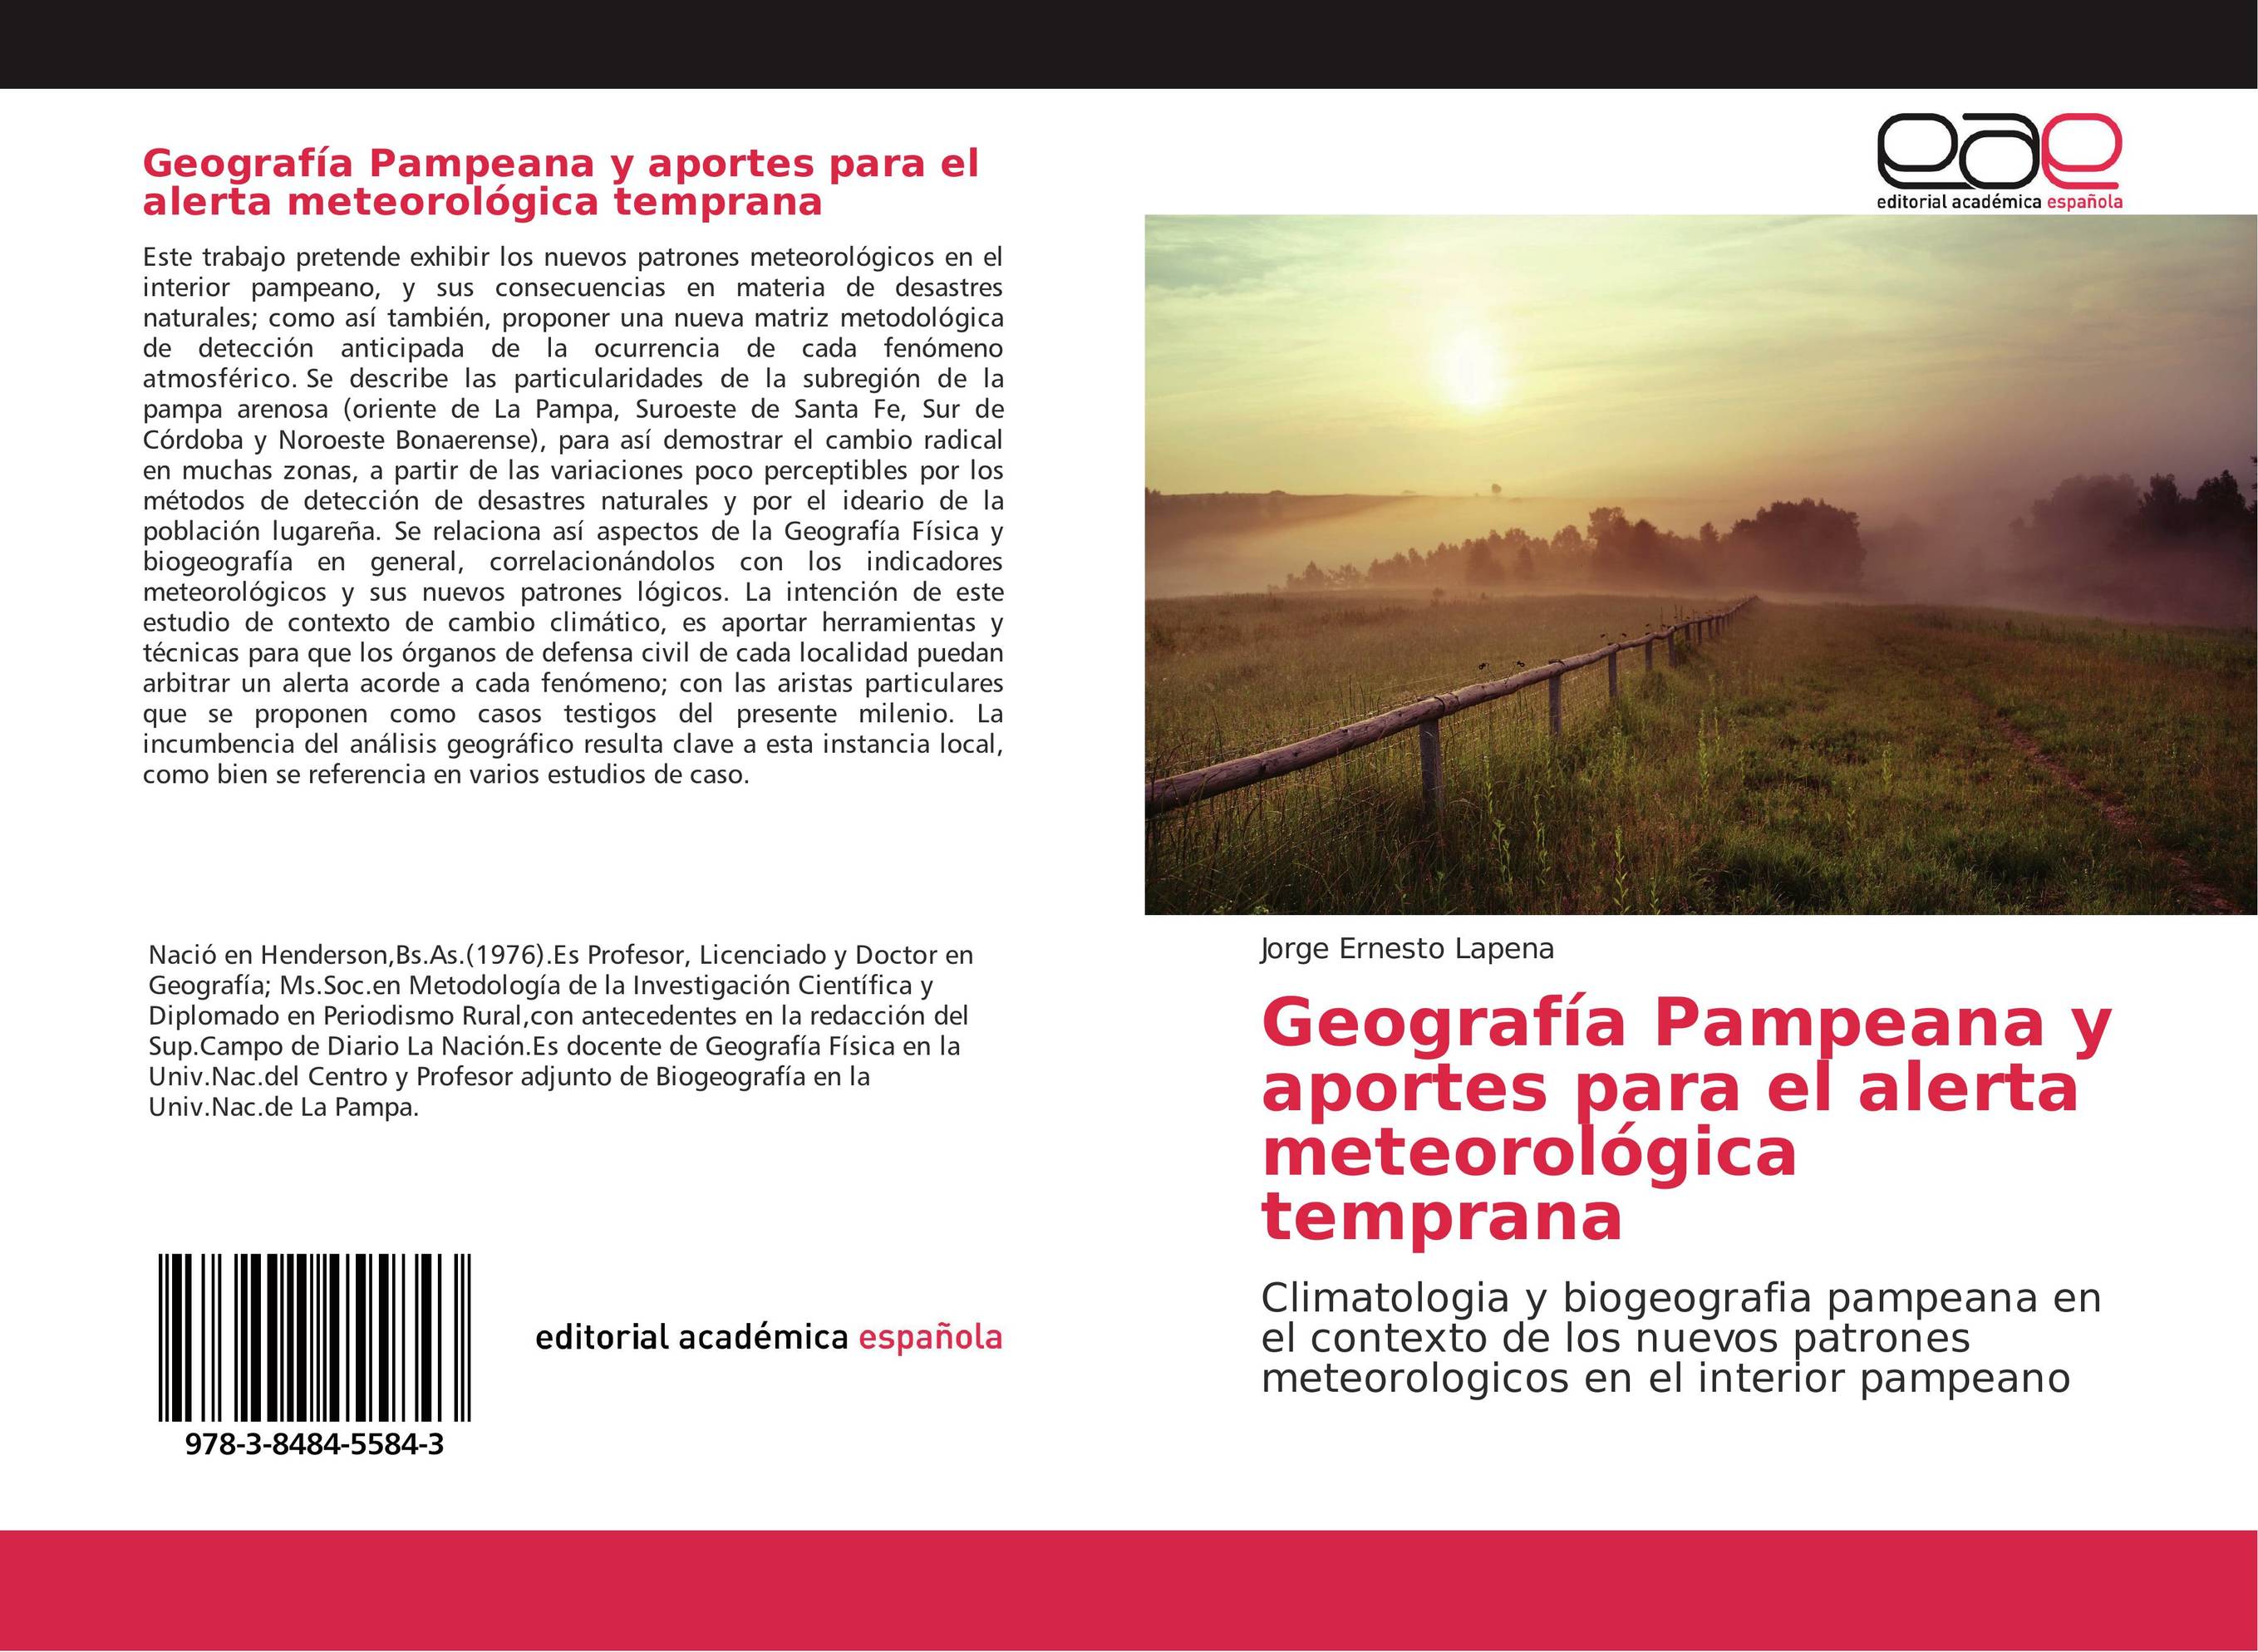 Geografía Pampeana y aportes para el alerta meteorológica temprana